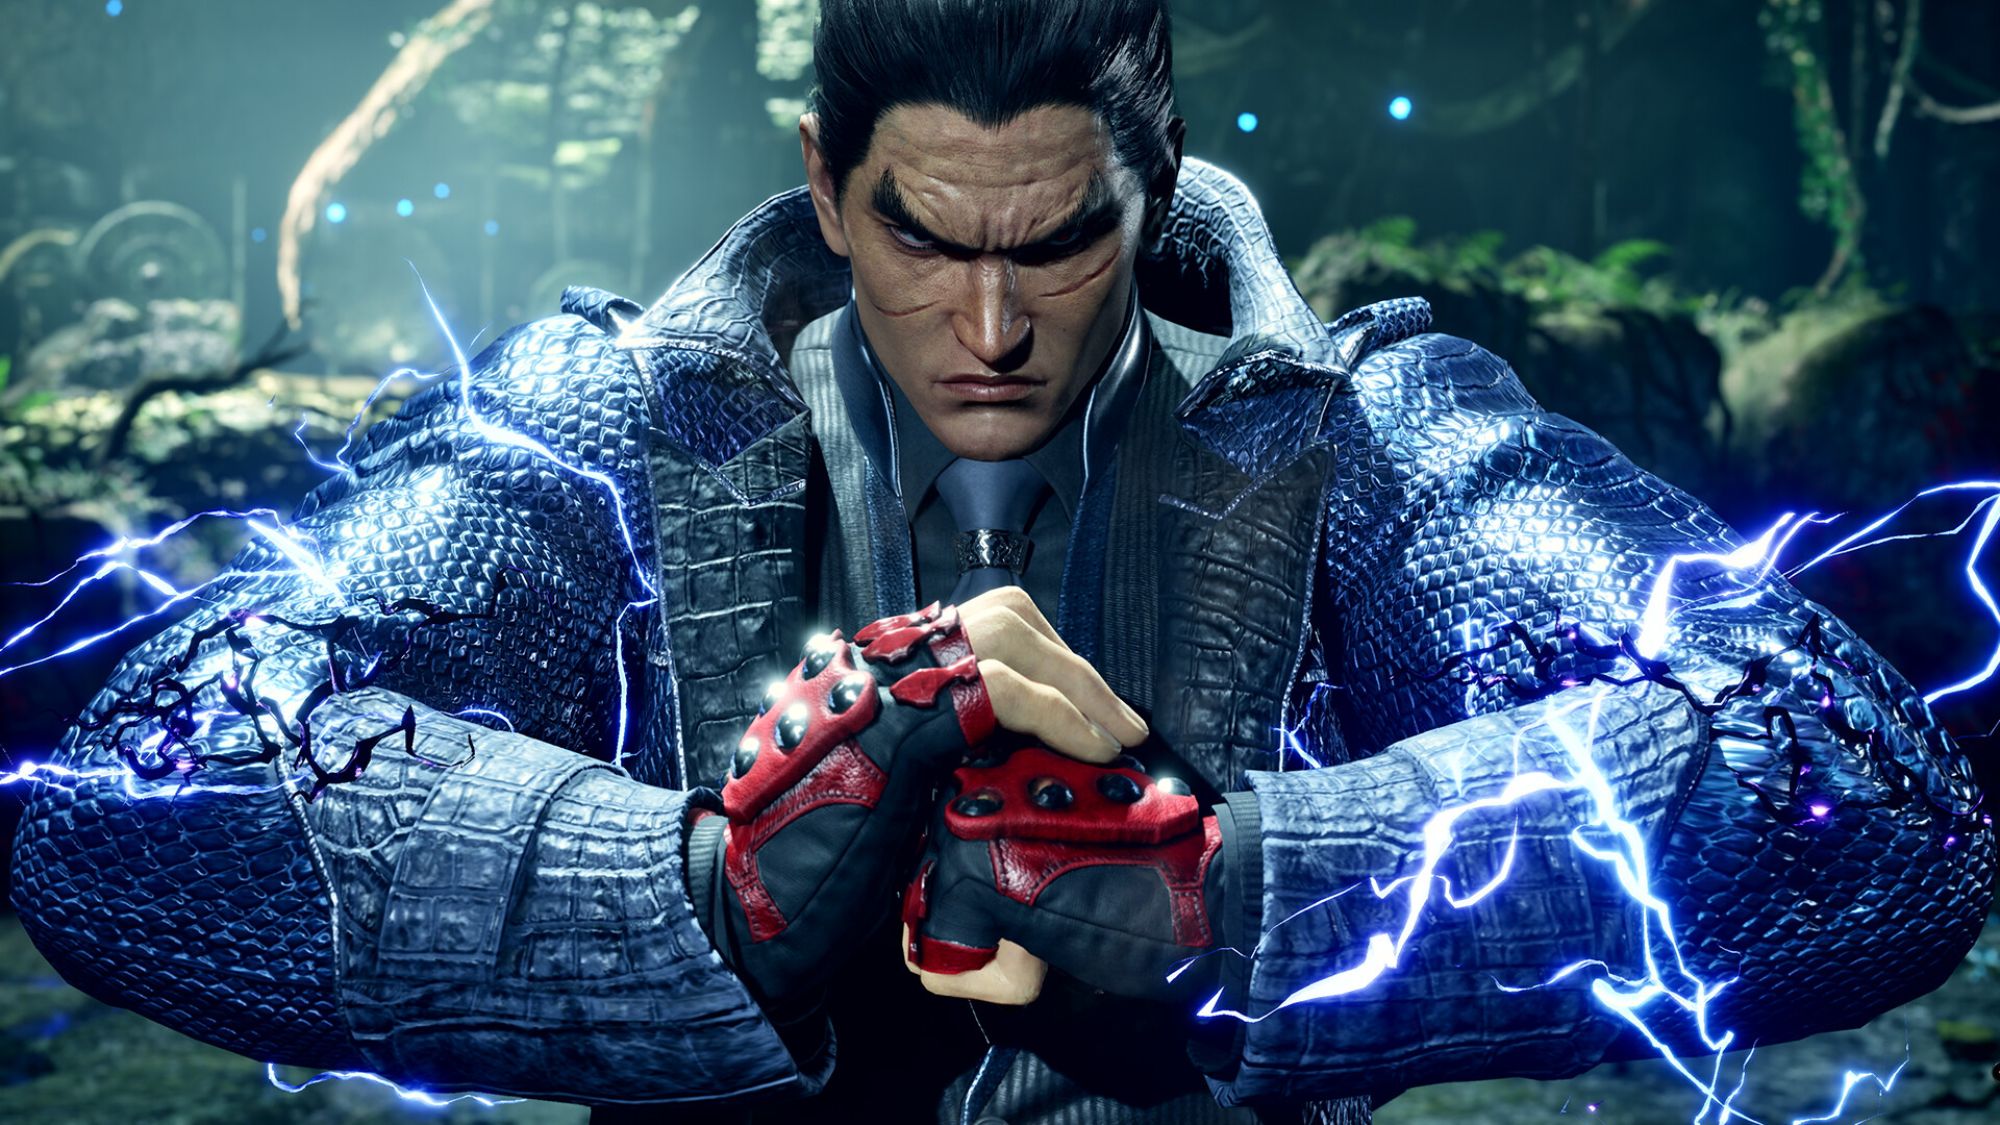 Tekken 8 PC System Requirements Confirmed, Demands 100GB of Storage - IGN